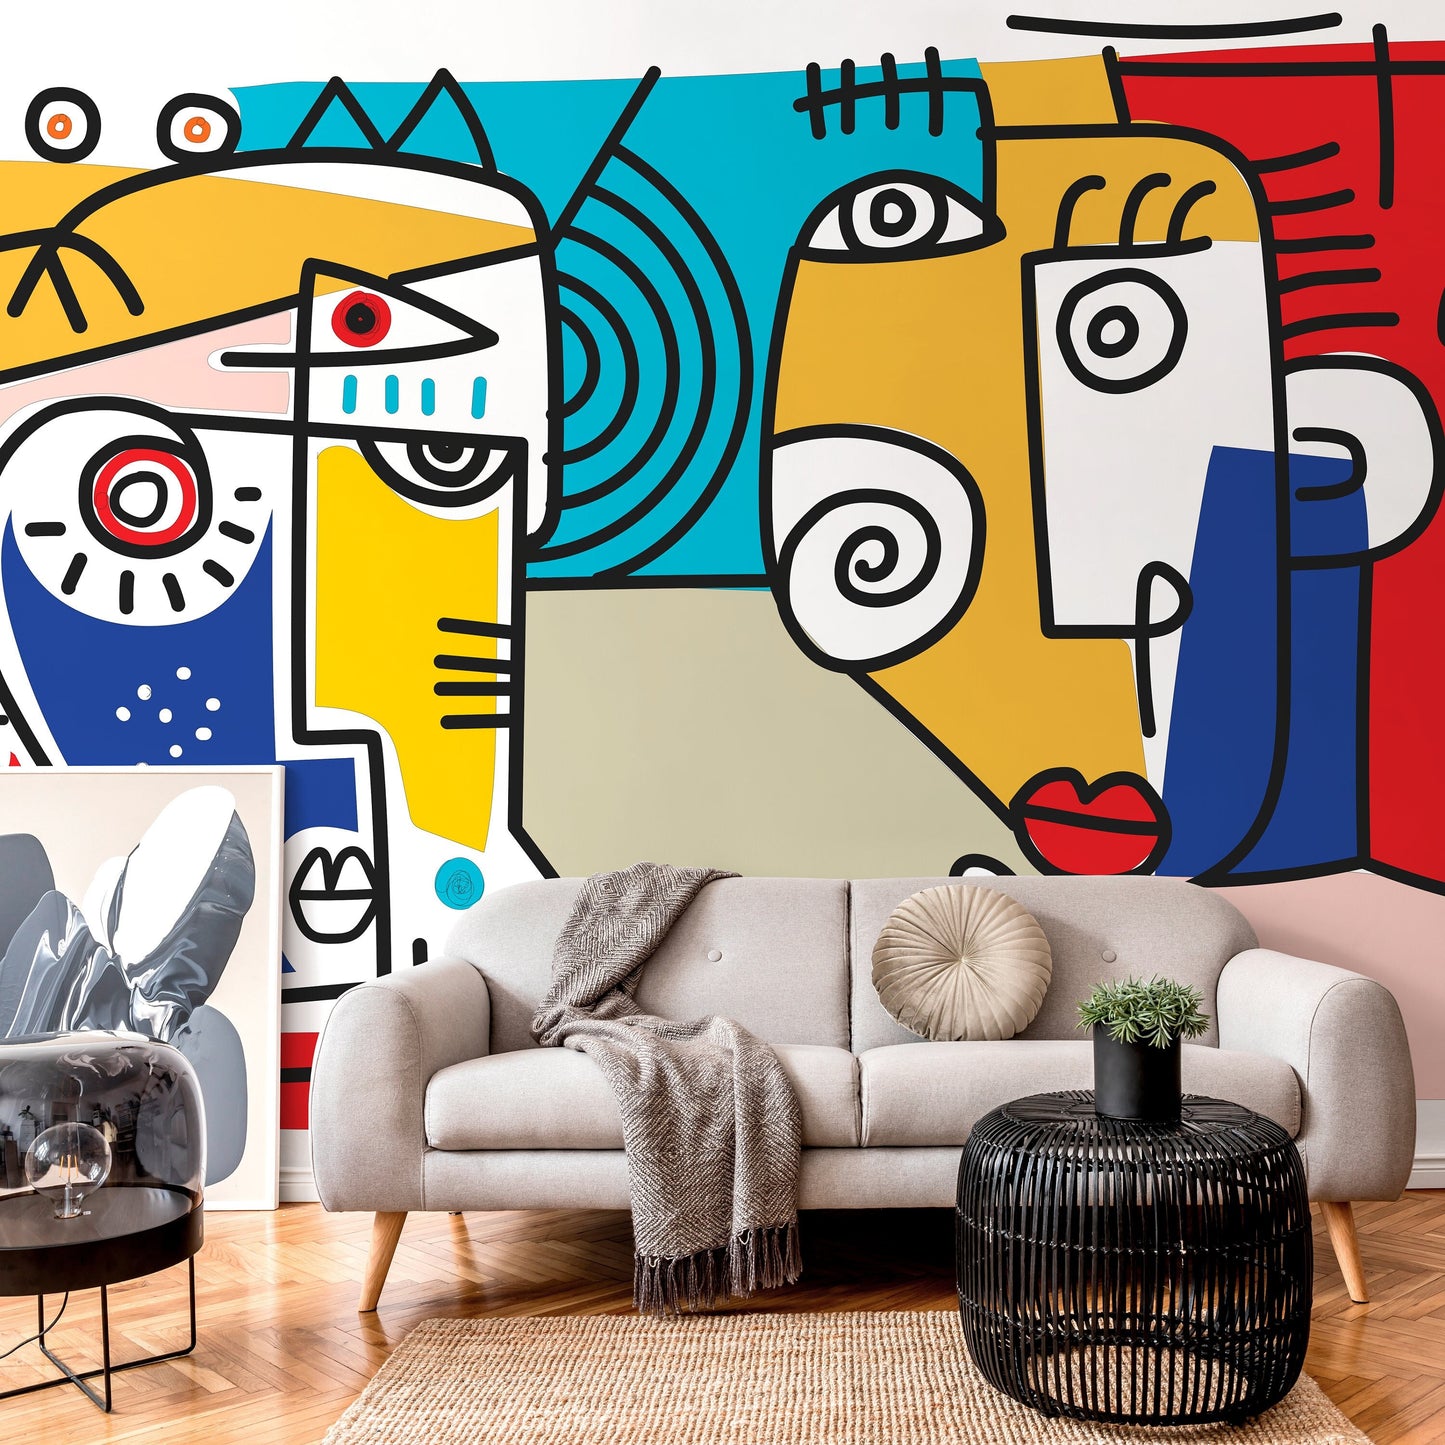 Modern Cubism Art Wallpaper Abstract Mural Peel and Stick Wallpaper Home Decor - D569